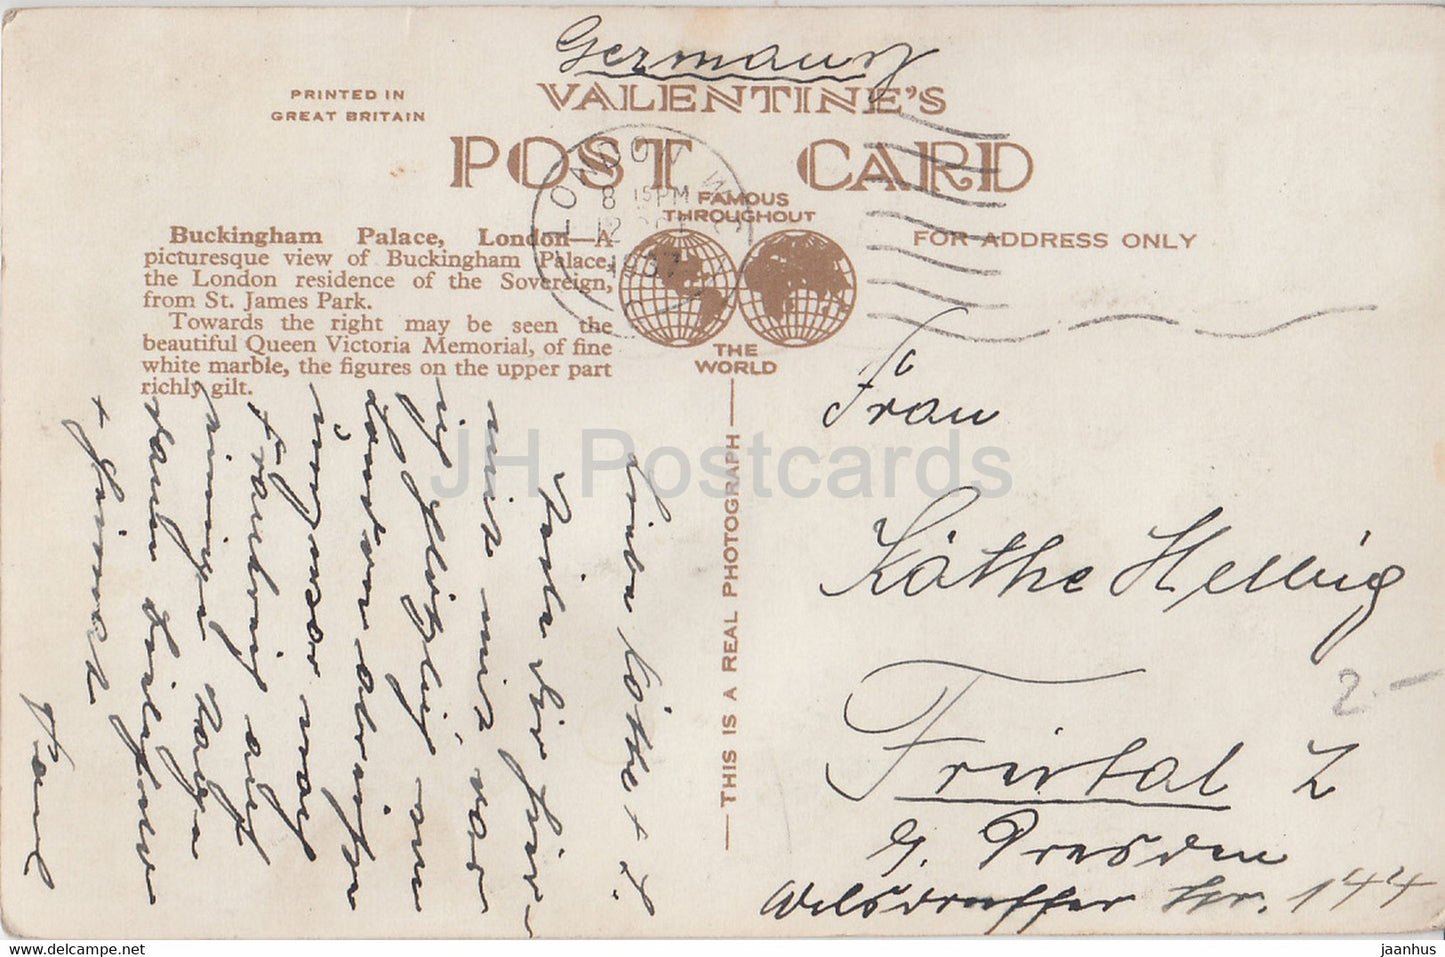 London – Buckingham Palace – 219784 – alte Postkarte – 1937 – England – Vereinigtes Königreich – gebraucht